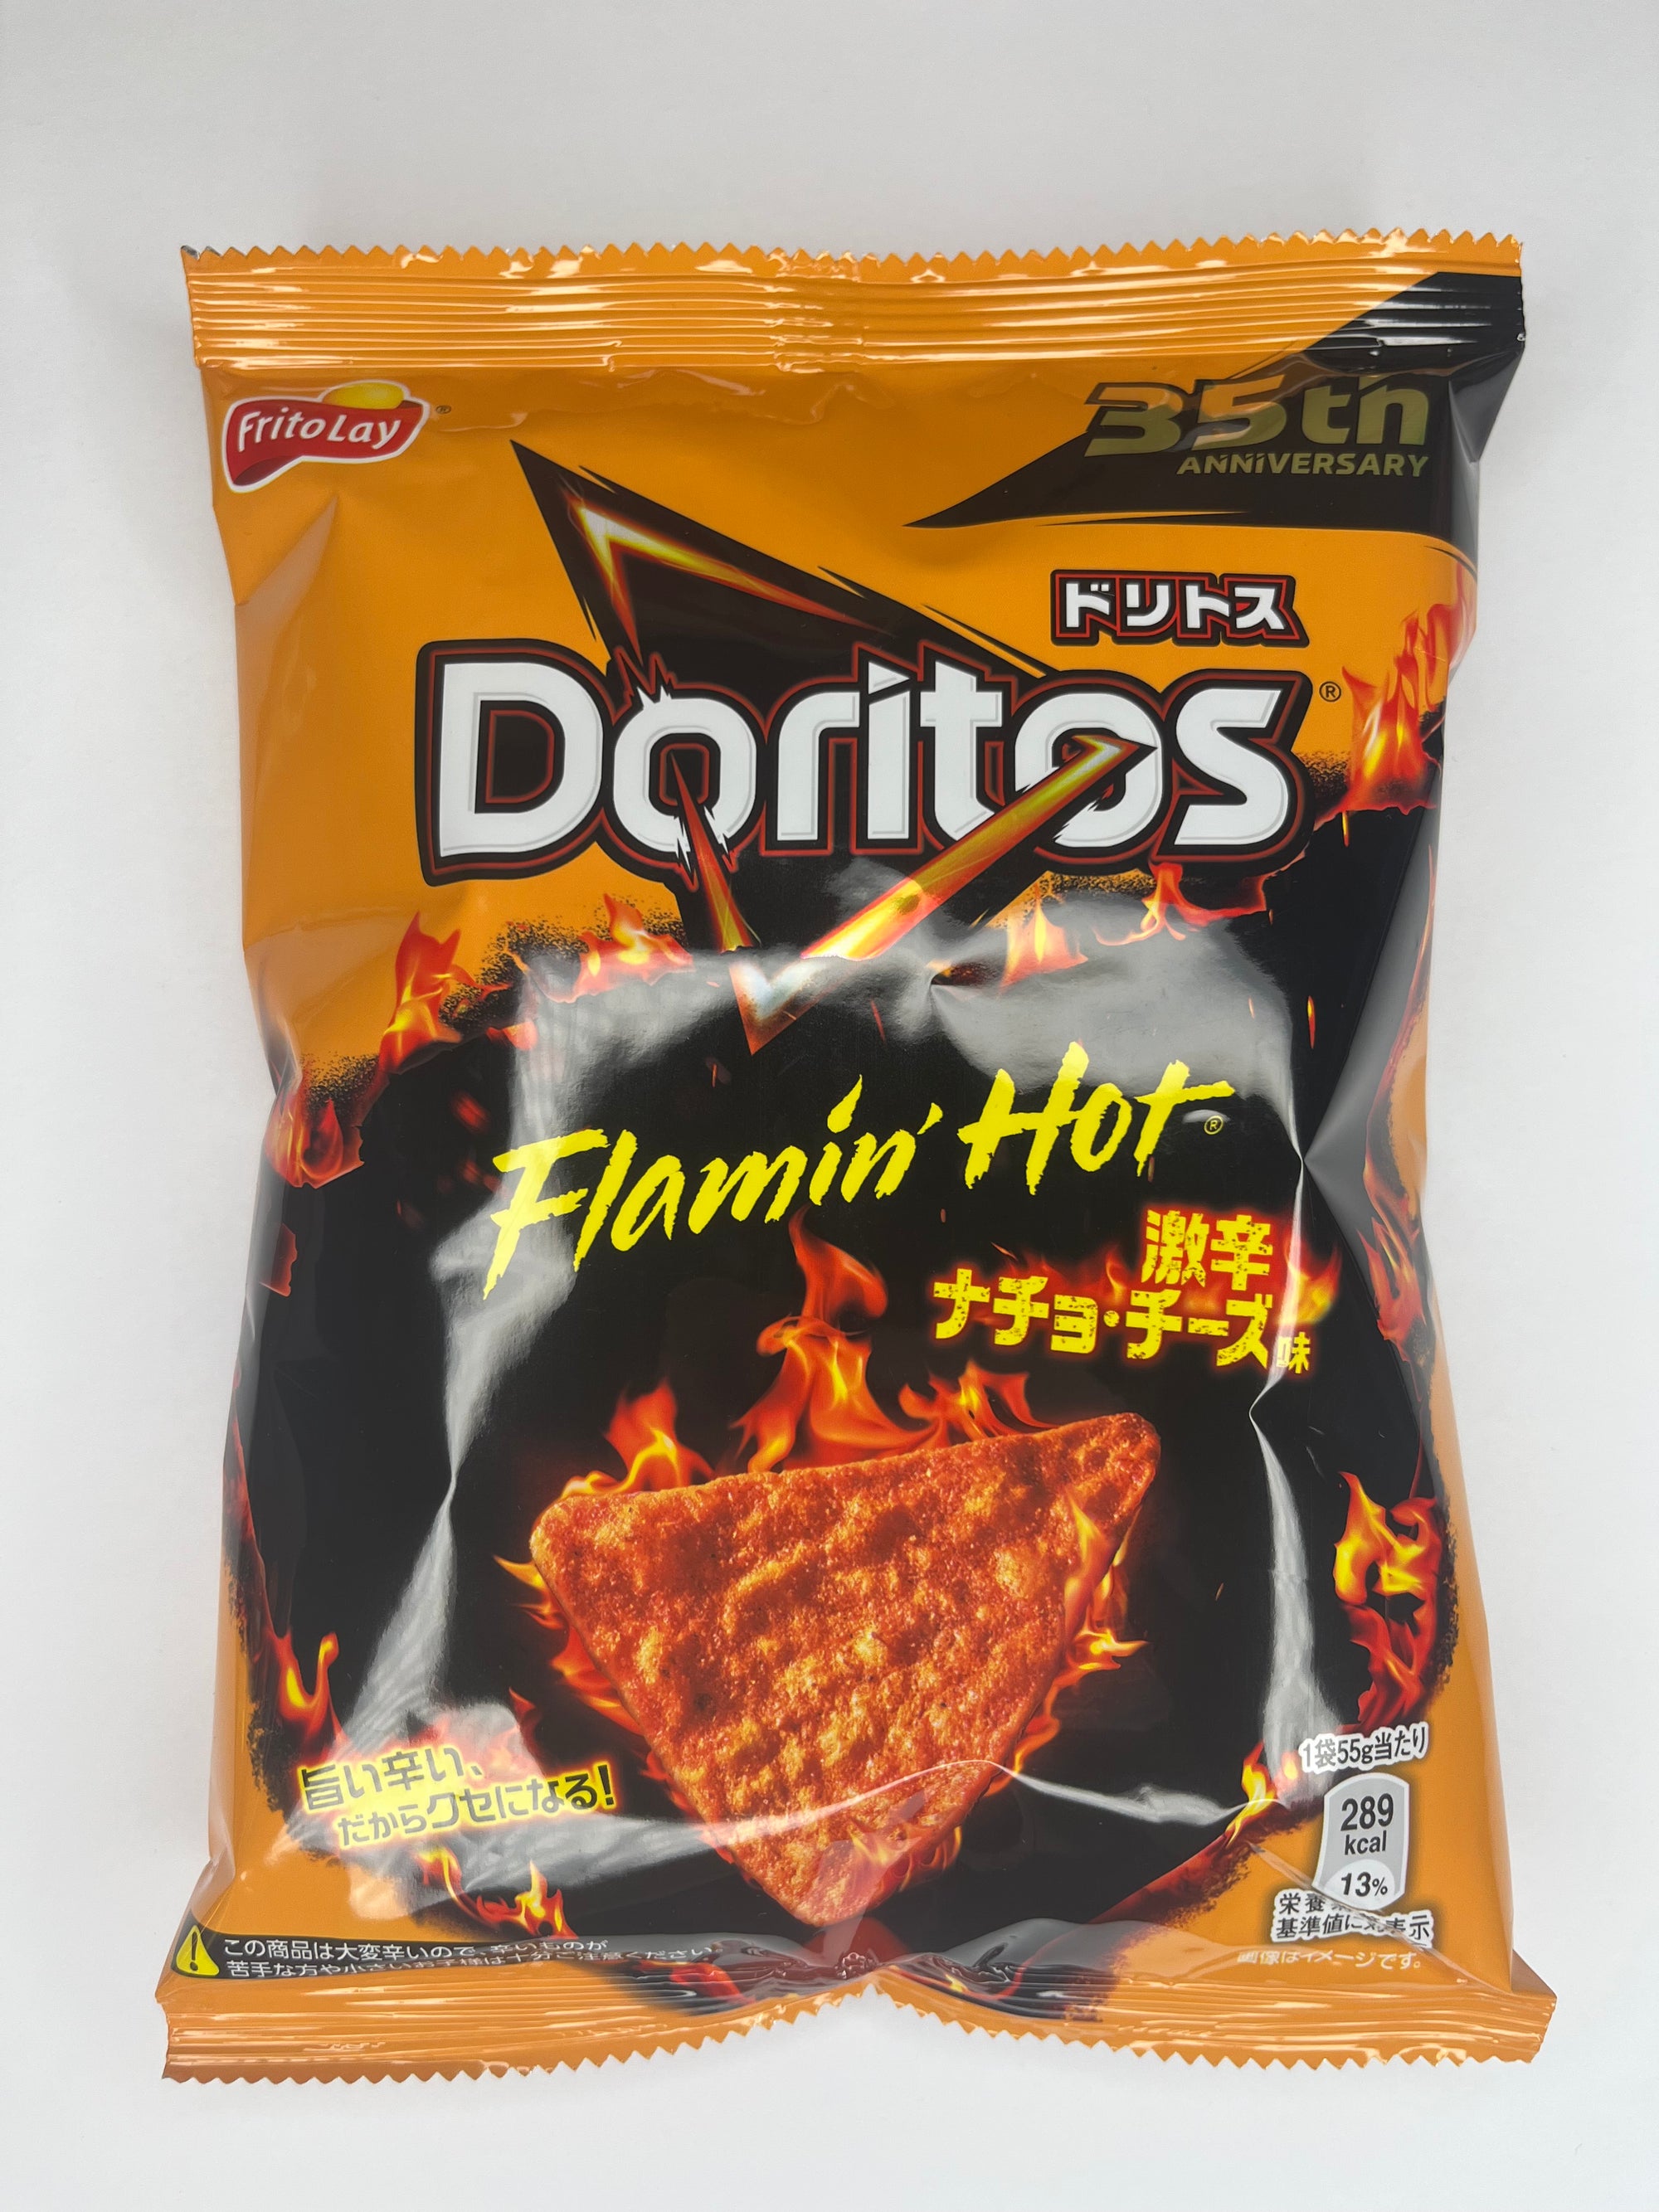 Doritos Cheesy Flamin Hot (Japan) - www.